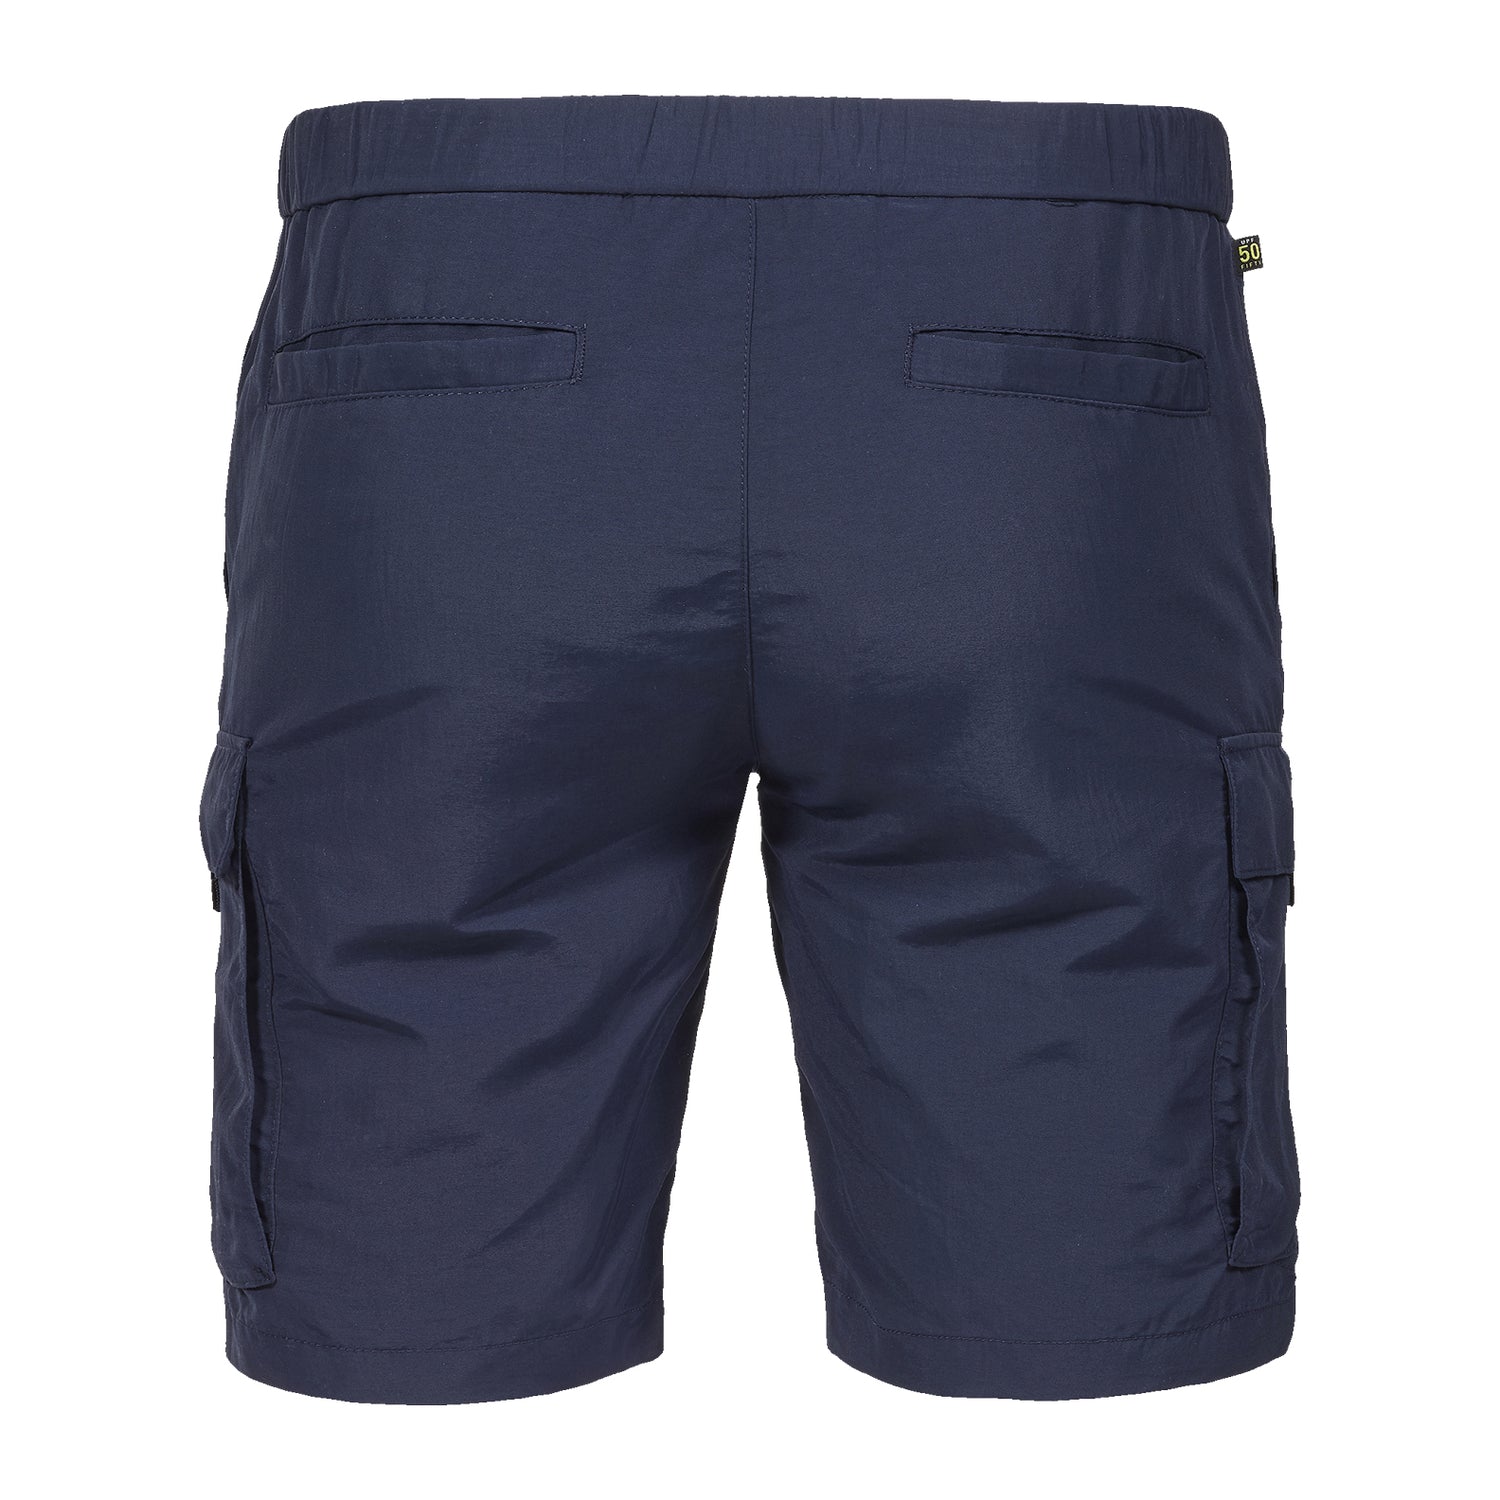 Musto-Marina-Bay-Shorts